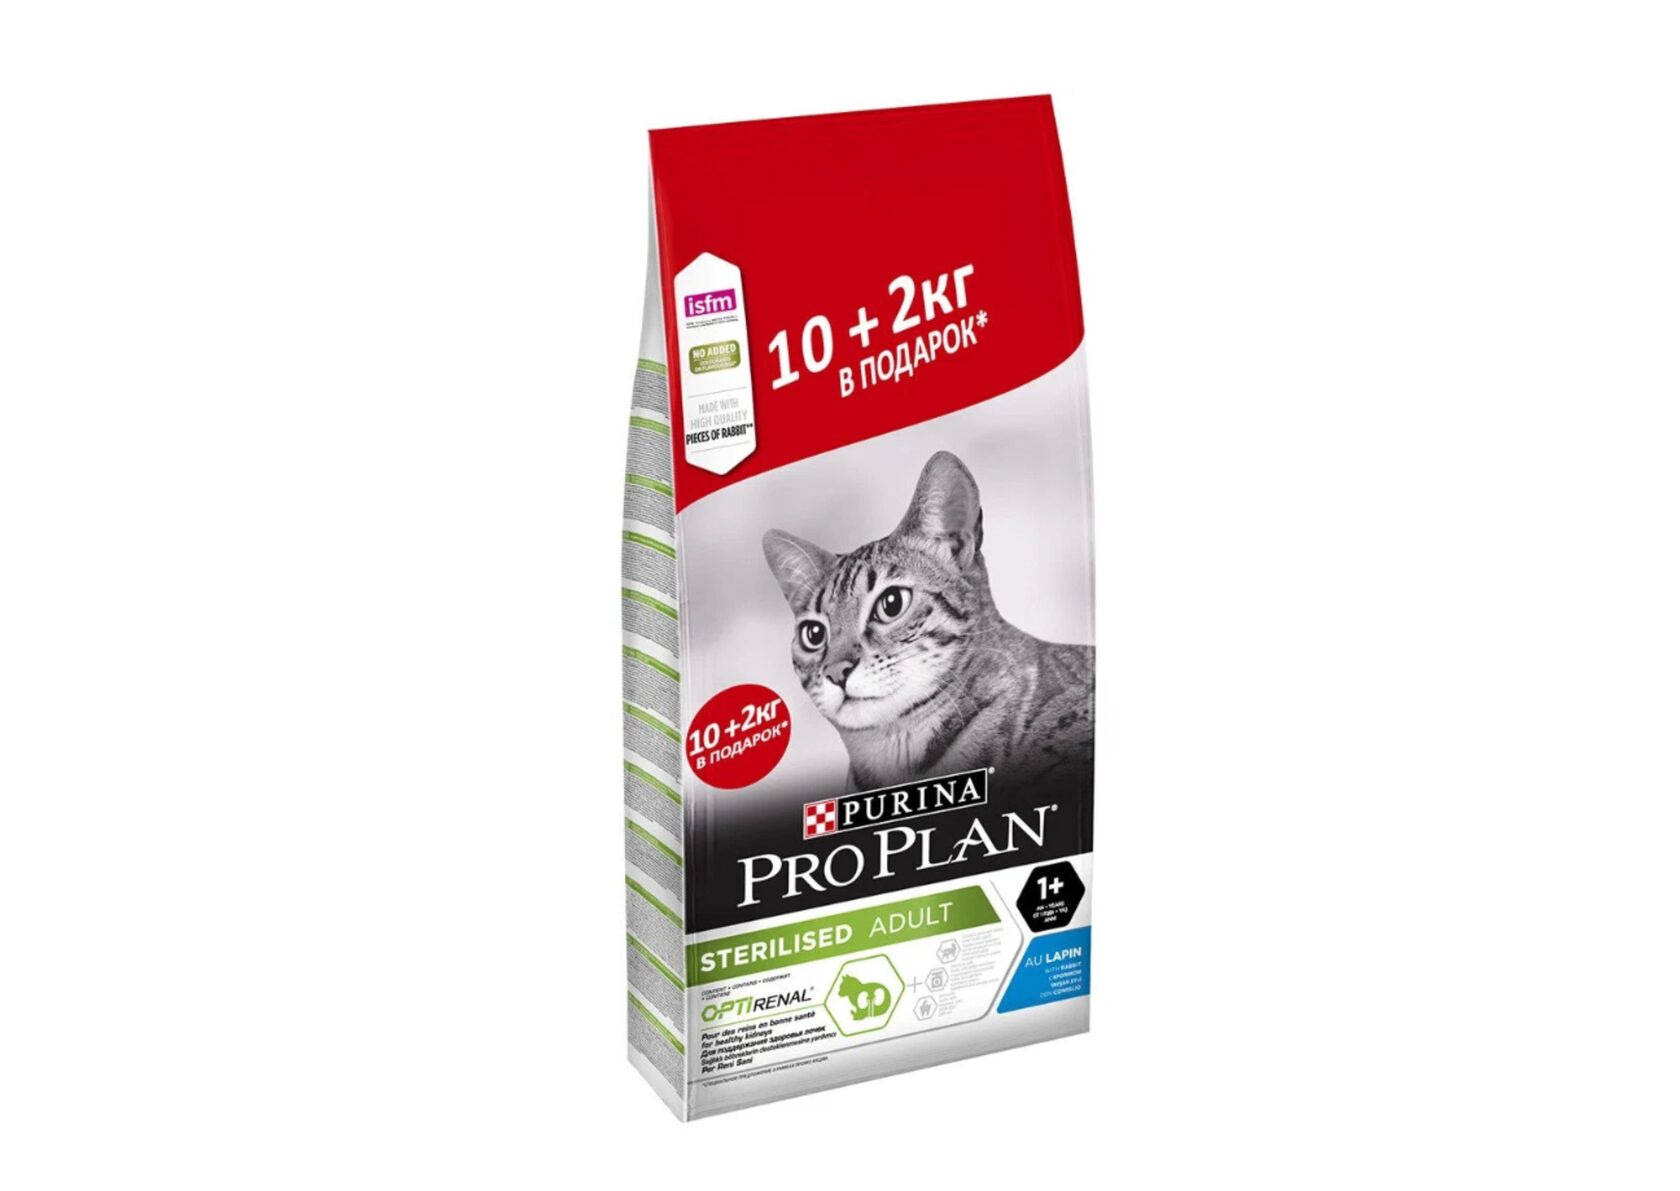 Купить проплан для кошек 10. Pro Plan Sterilised для кошек. Проплан 12 кг для кошек. Проплан для котят Деликат индейка 10 +2 кг. Проплан индейка 10+2 кг для кошек.